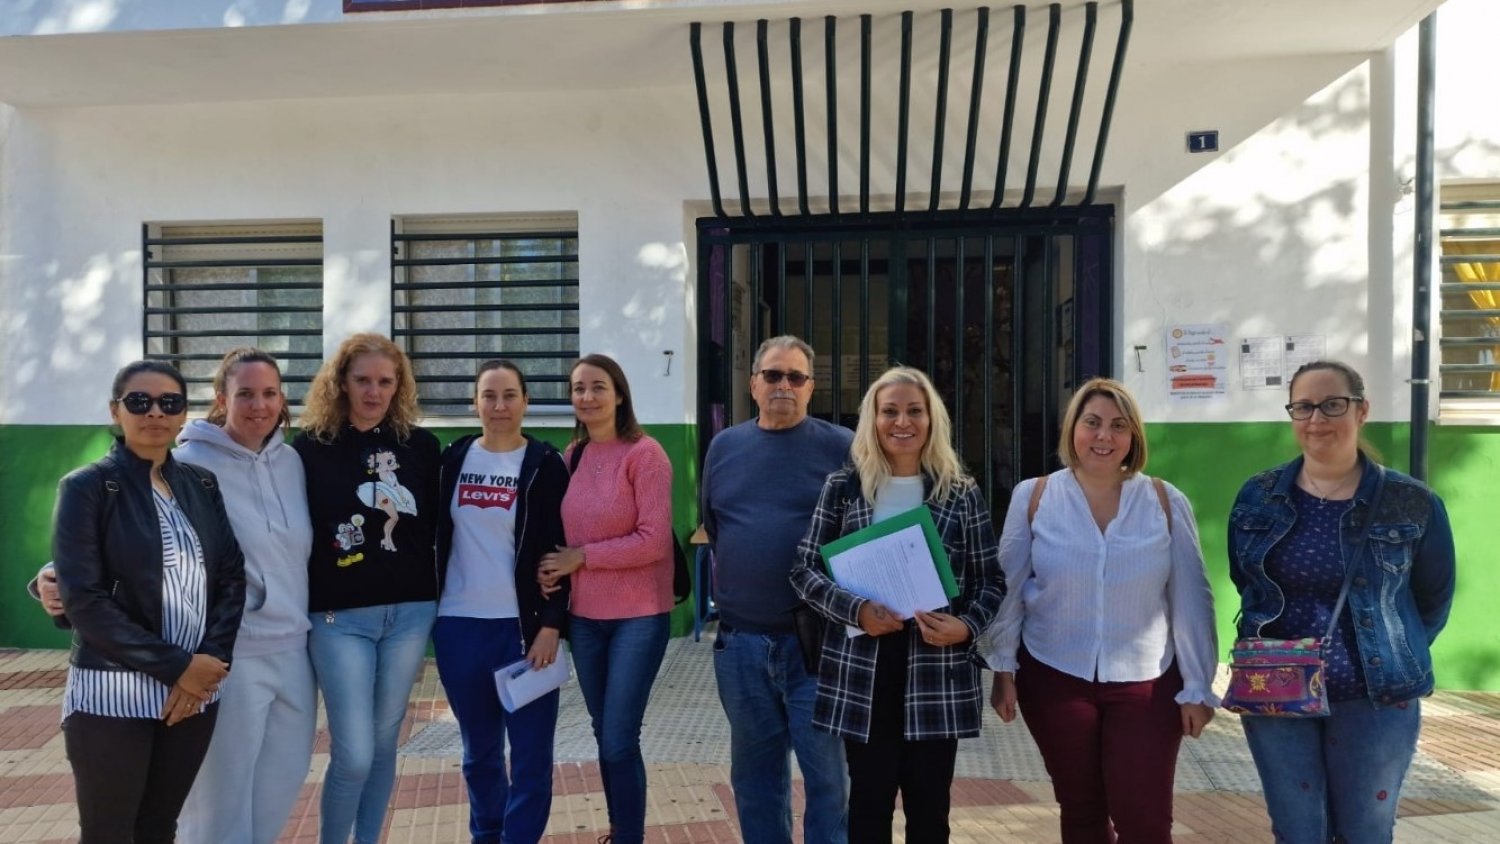 IU reclama a Moreno Bonilla y a Ángeles Muñoz que “dejen de maltratar la educación pública en Marbella”